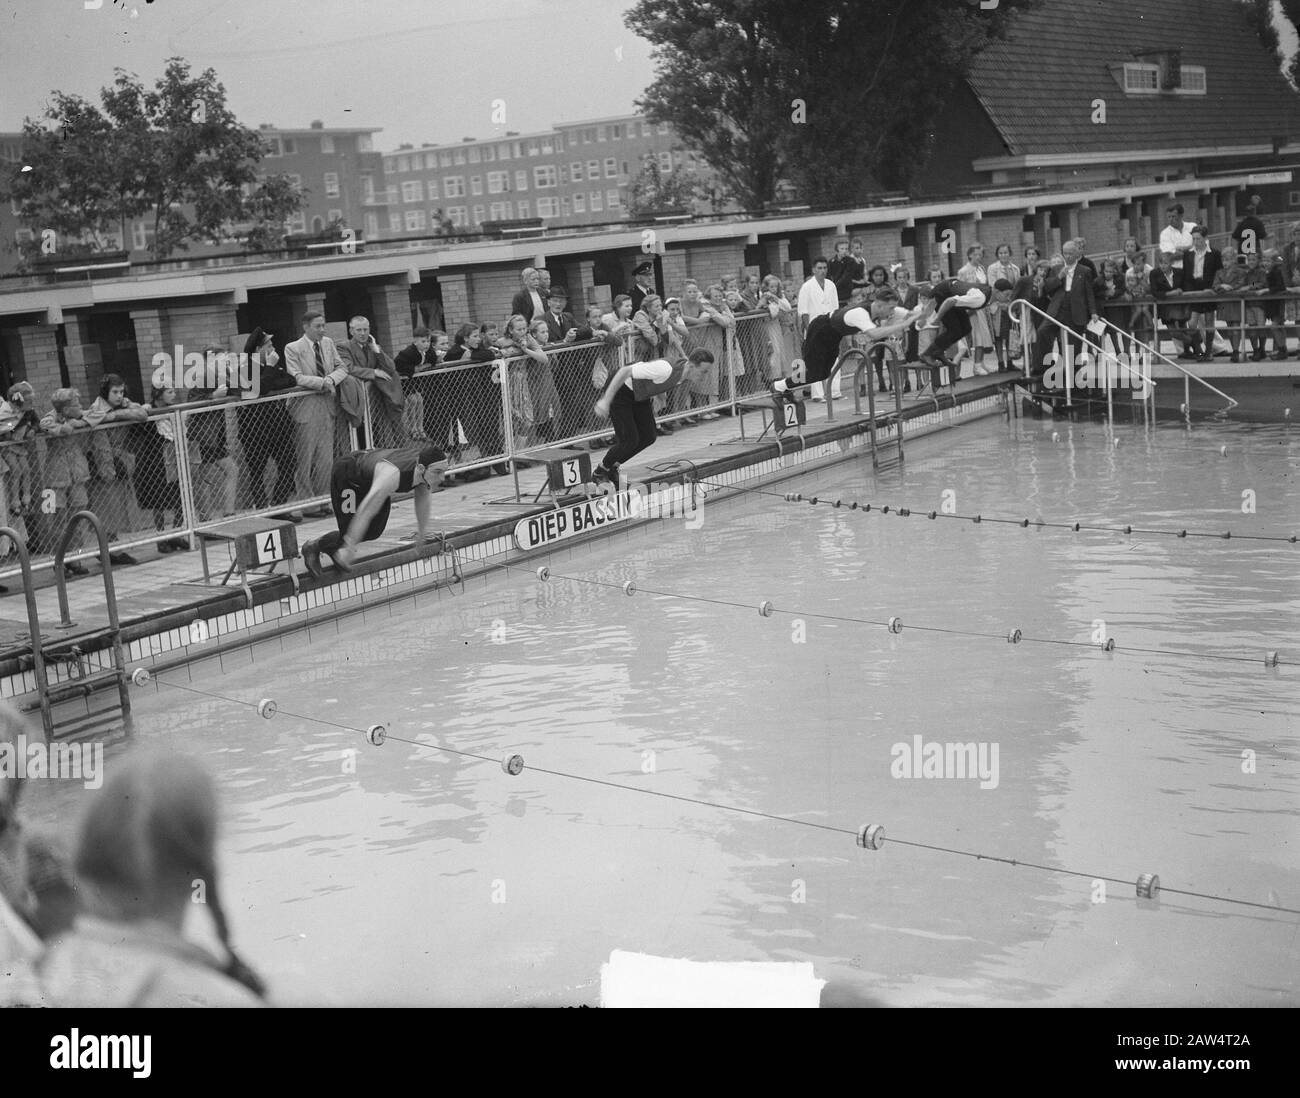 Polizia nuoto incontro a Meraindobad Data: 5 luglio 1950 Foto Stock